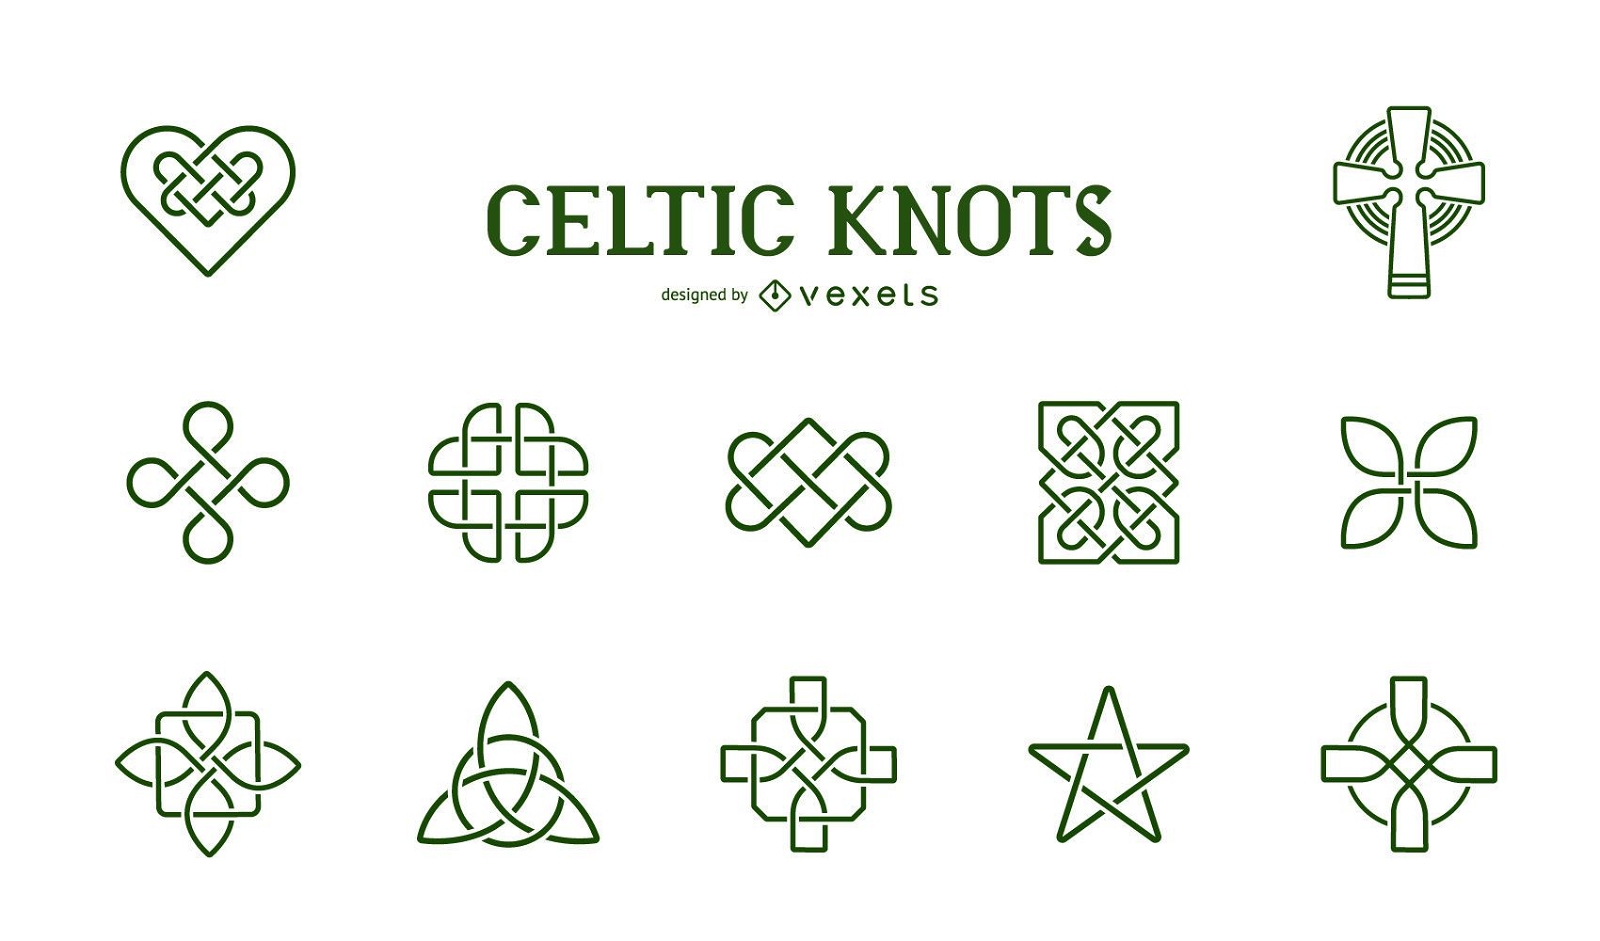 Colección de símbolos de nudos celtas